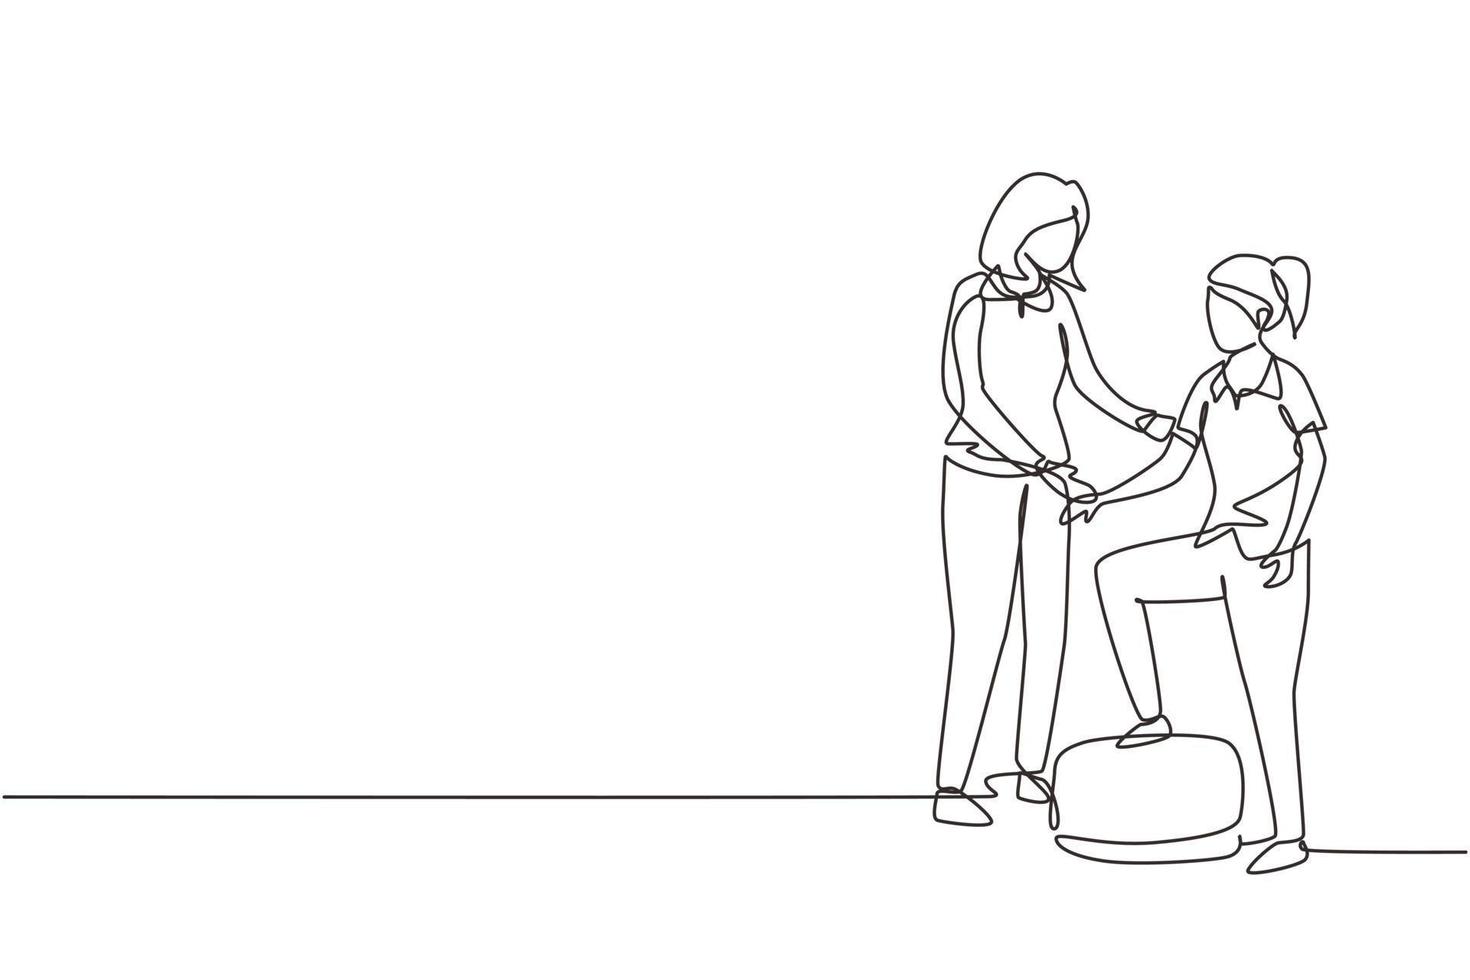 mujer terapeuta de dibujo de una sola línea que ayuda a una paciente joven a subir las escaleras, rehabilitación médica, actividad de fisioterapia. ilustración de vector gráfico de diseño de dibujo de línea continua